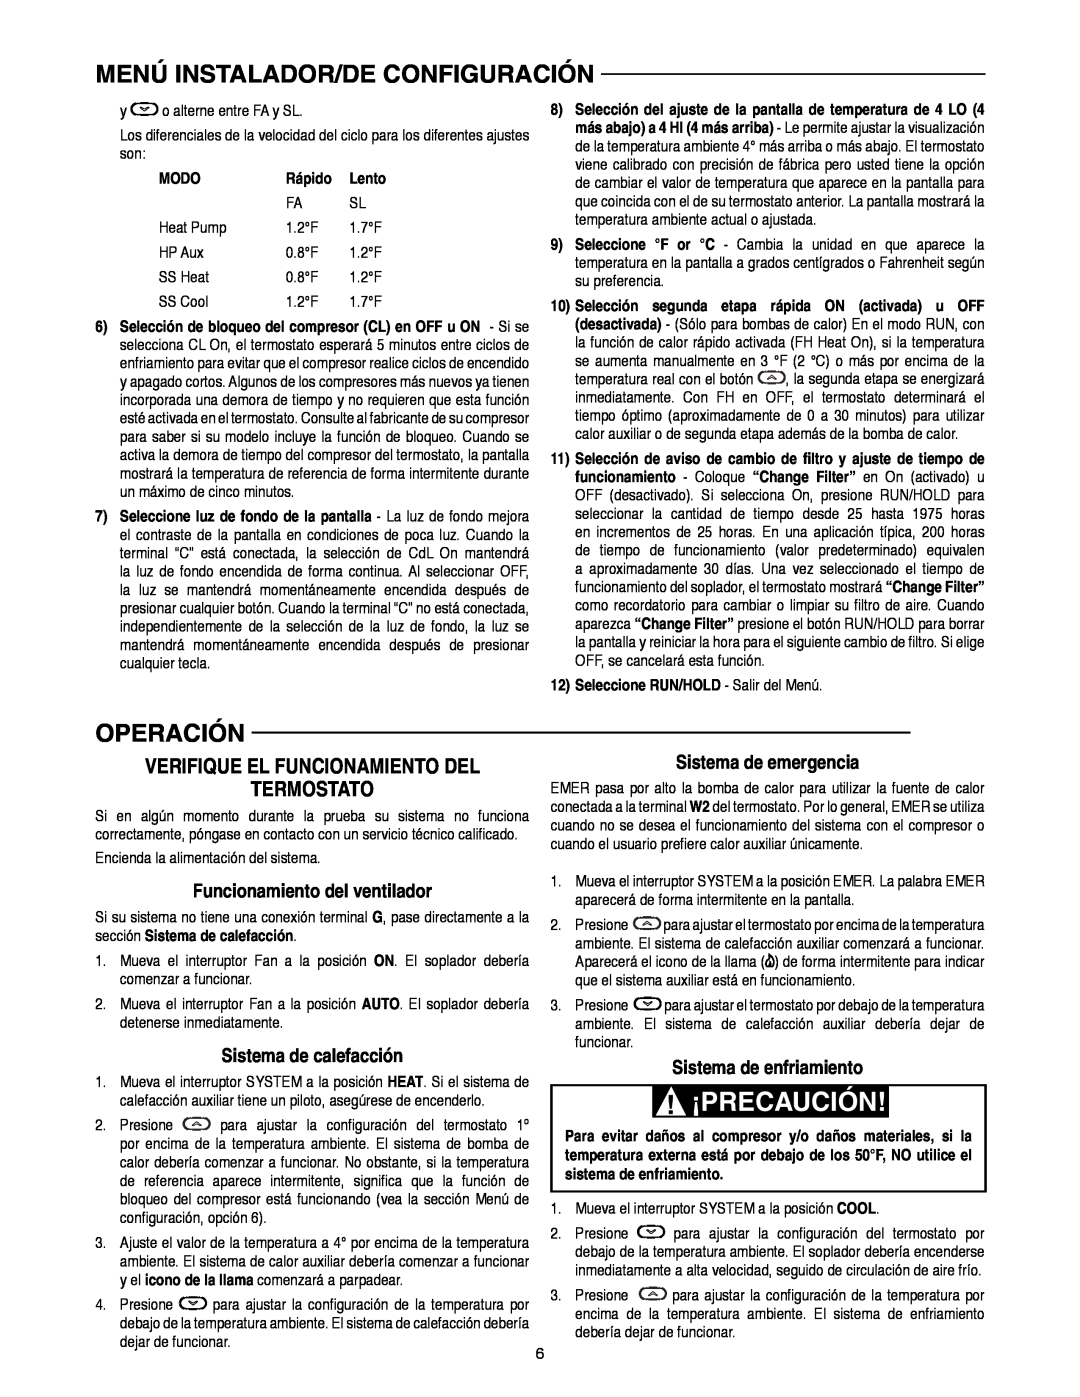 White Rodgers 1F82-0261 manual Operación, Termostato, Verifique El Funcionamiento Del, Funcionamiento del ventilador, Modo 